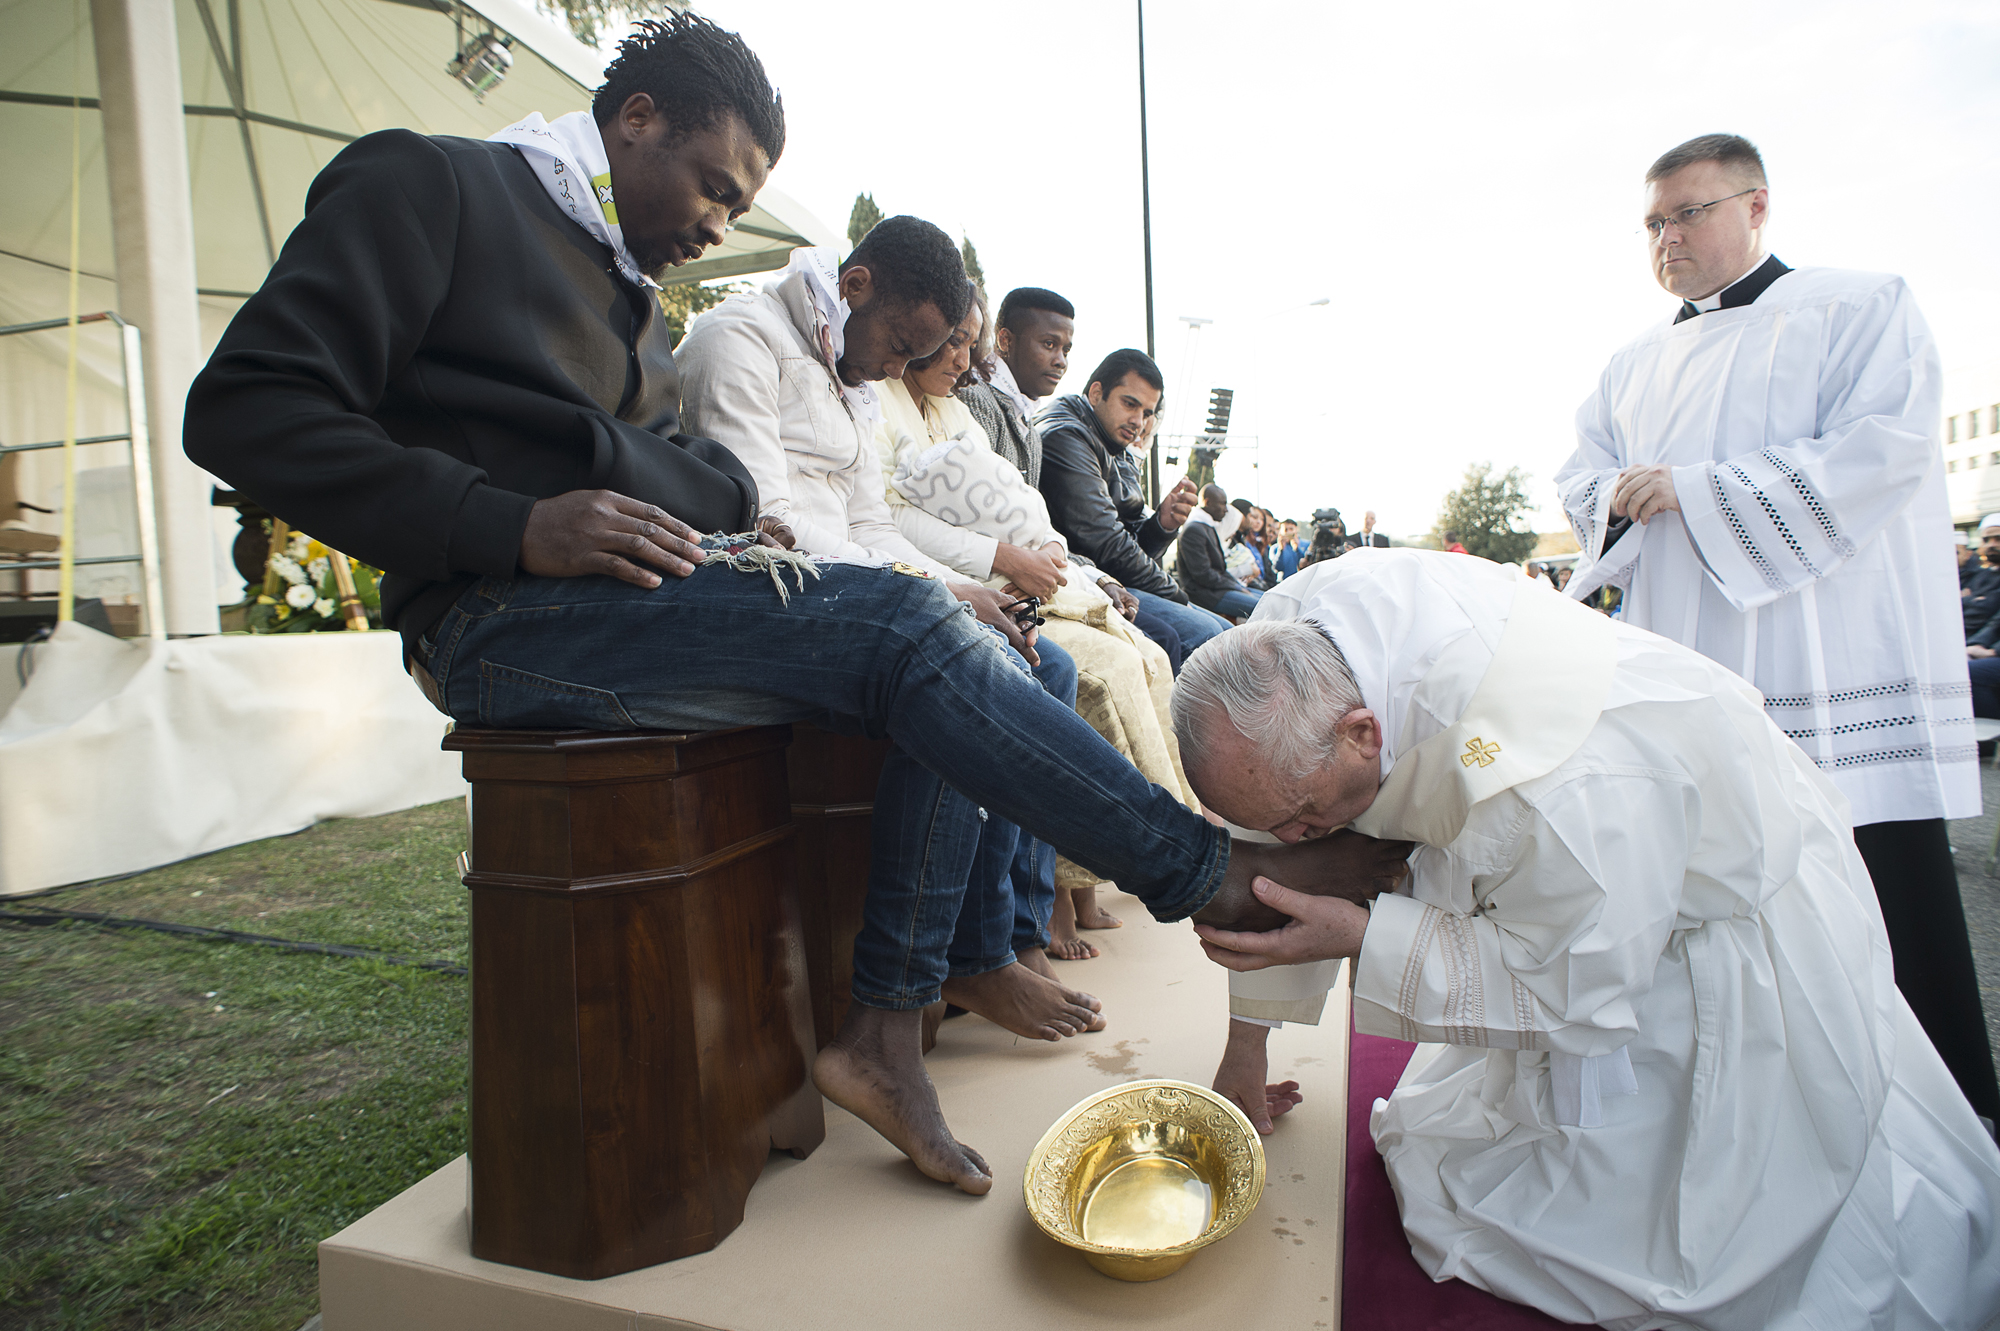 Menekültek lábát csókolta meg a Pápa